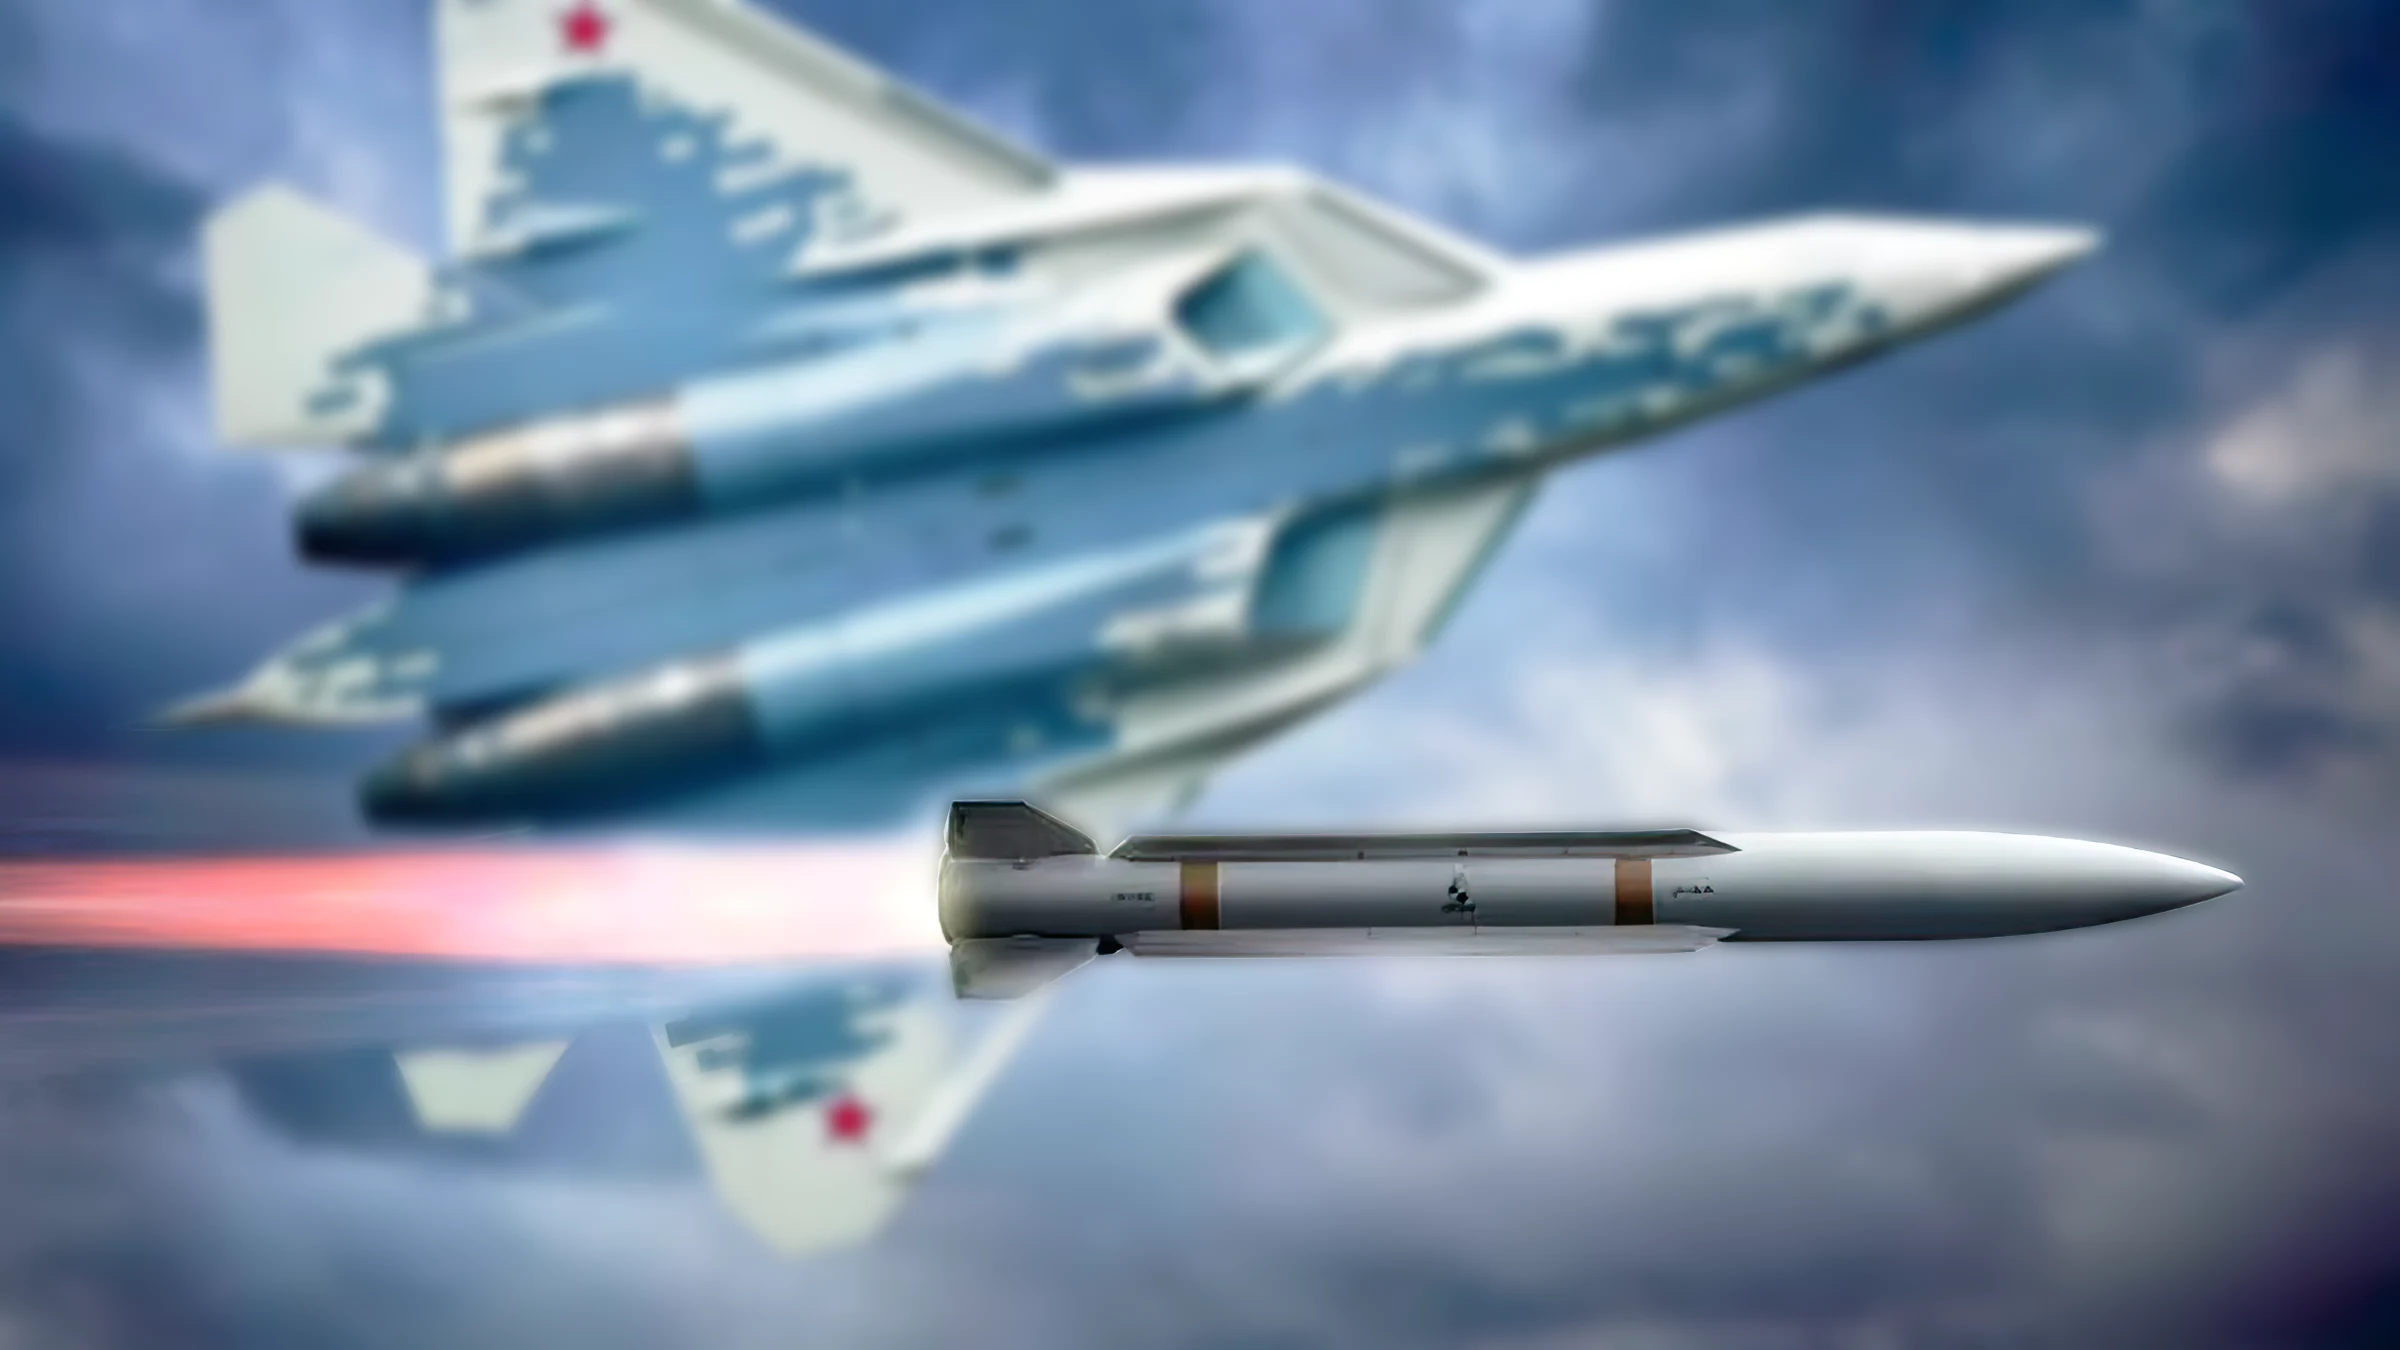 El Su-57 ruso se arma con el misil R-37M de 300 km de alcance